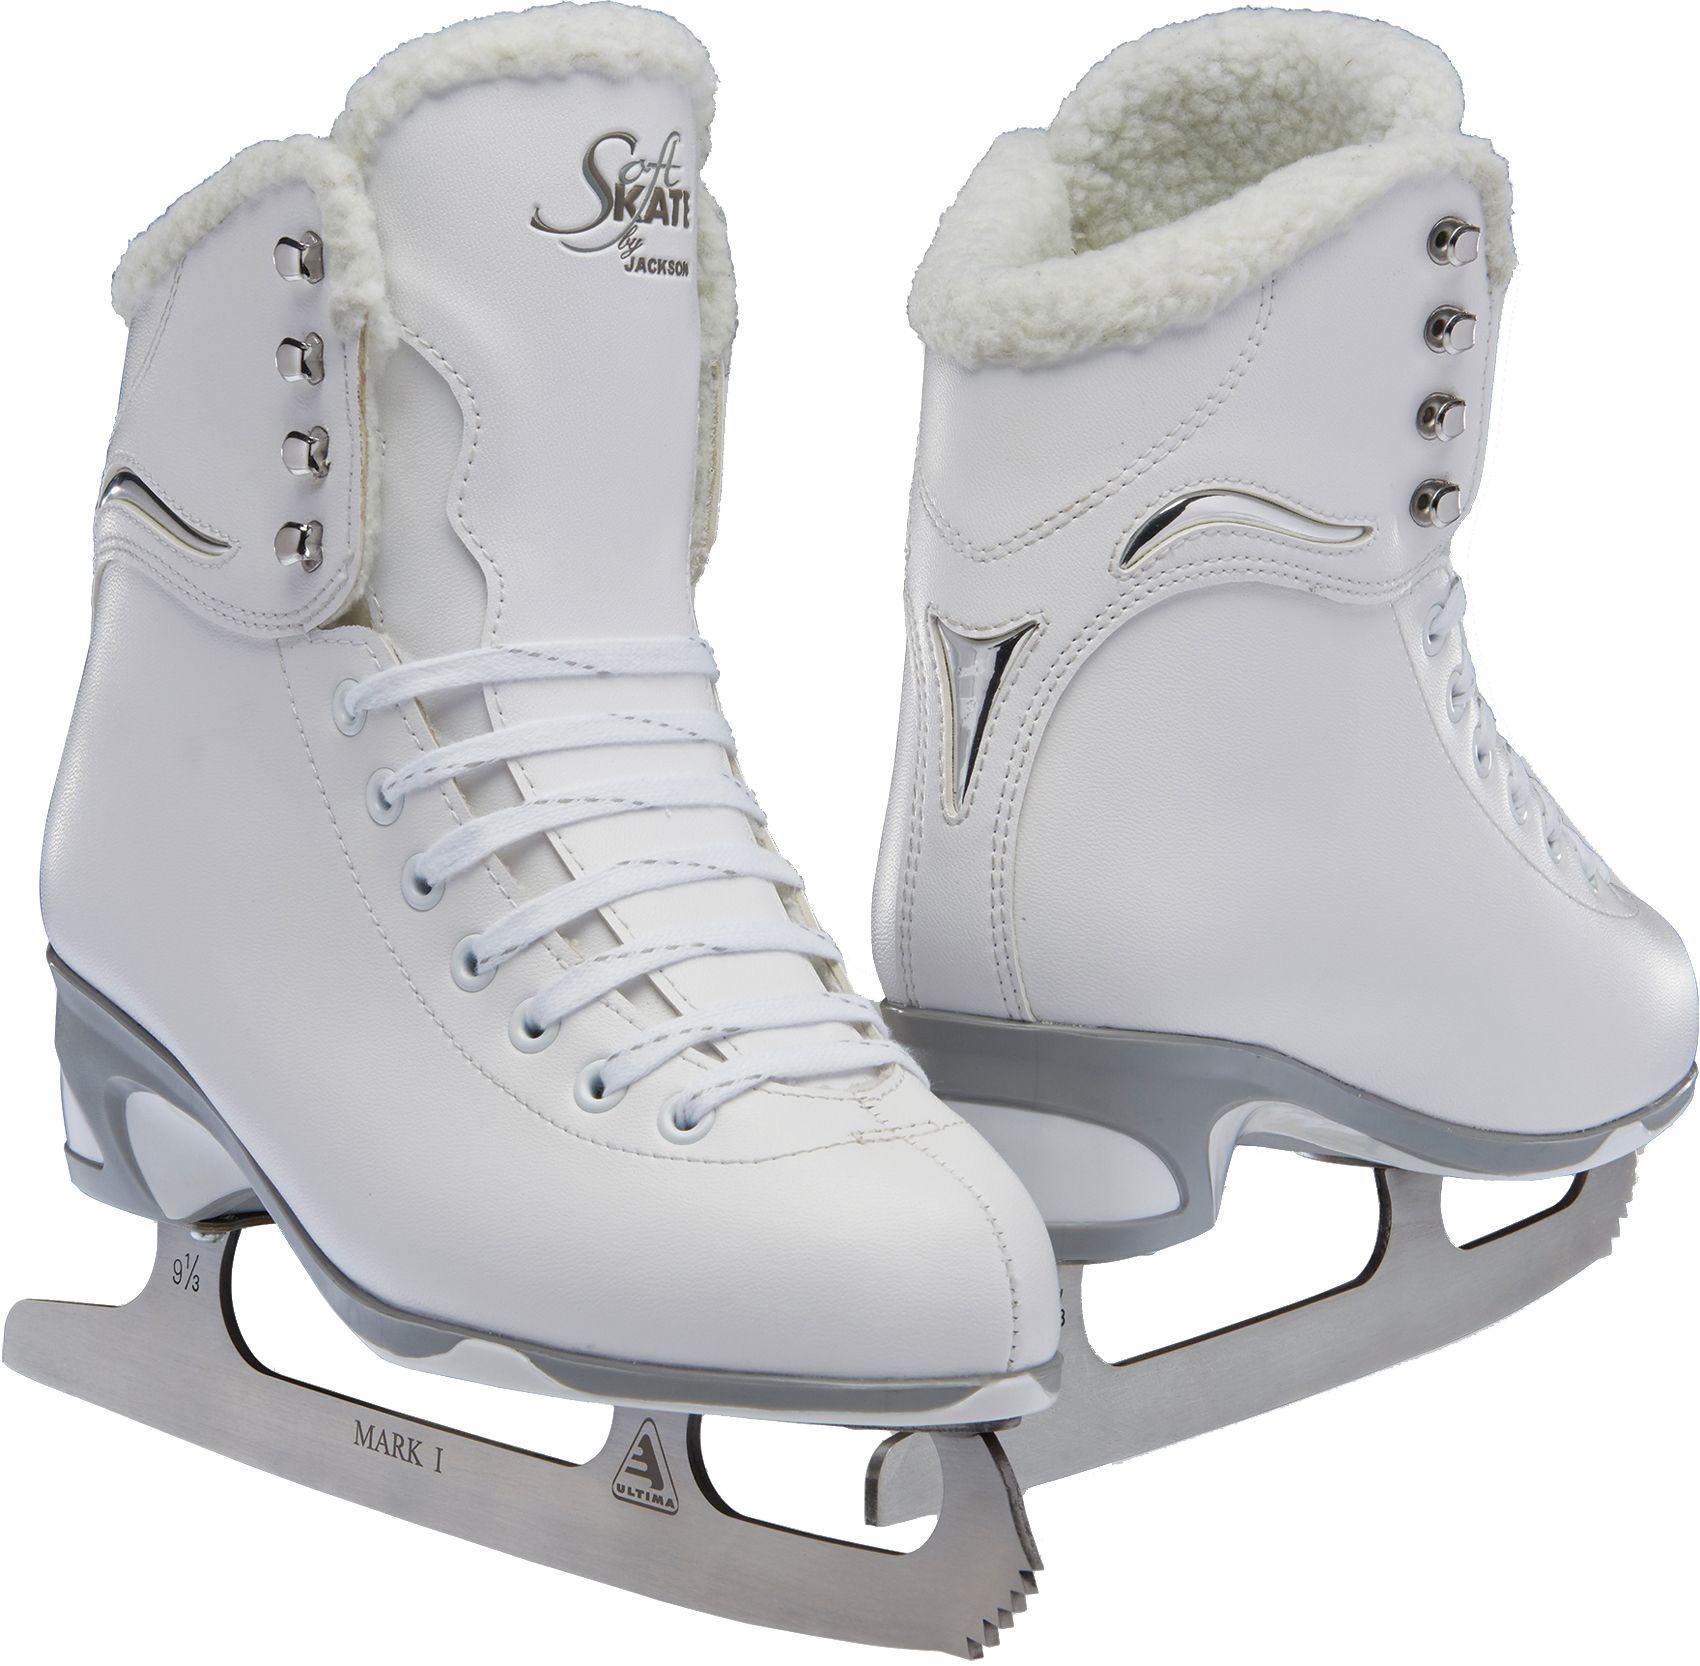 white ice skates size 6